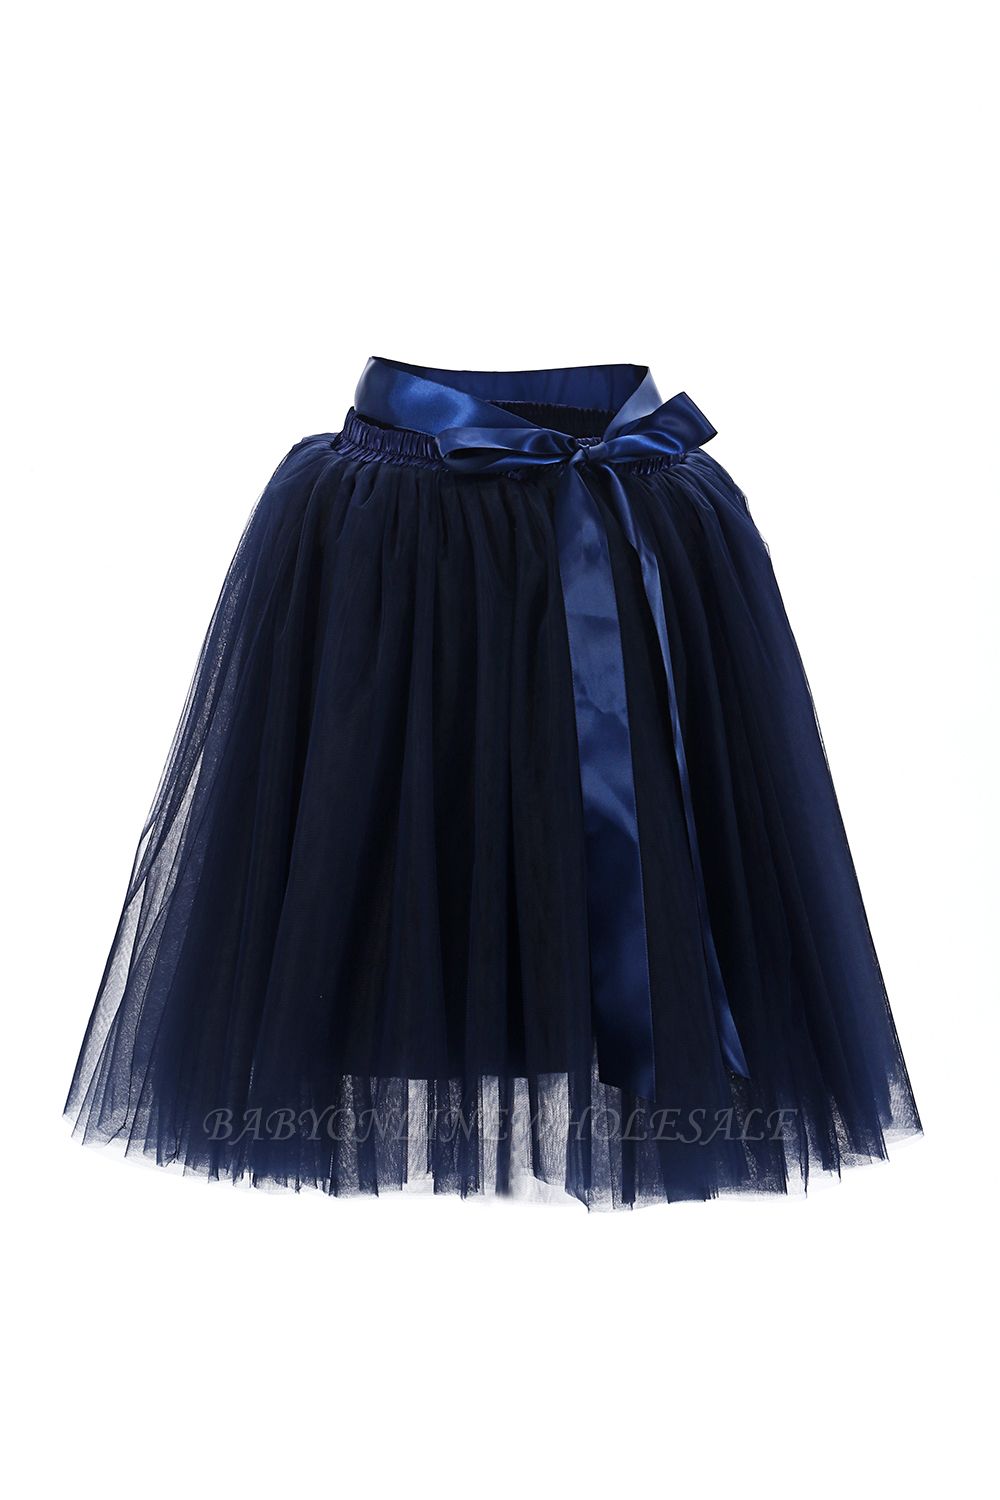 Increíbles minifaldas de tul con mini vestido de fiesta corto | Faldas elásticas para mujer